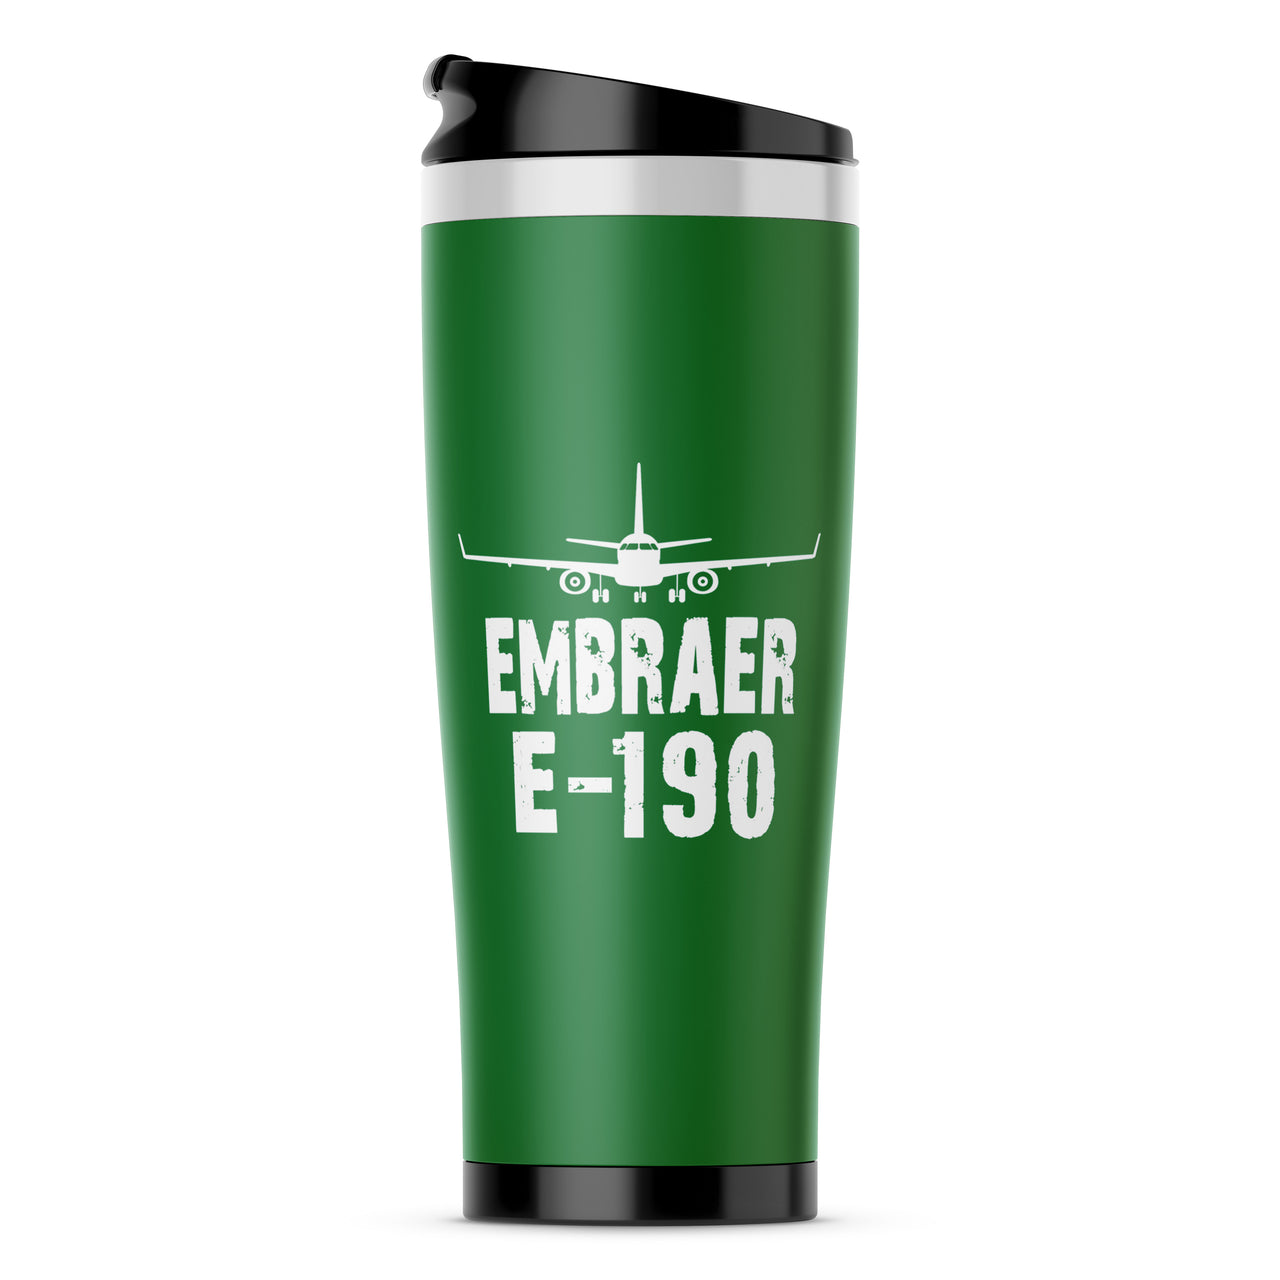 Embraer E-190 & Plane Designed Travel Mugs